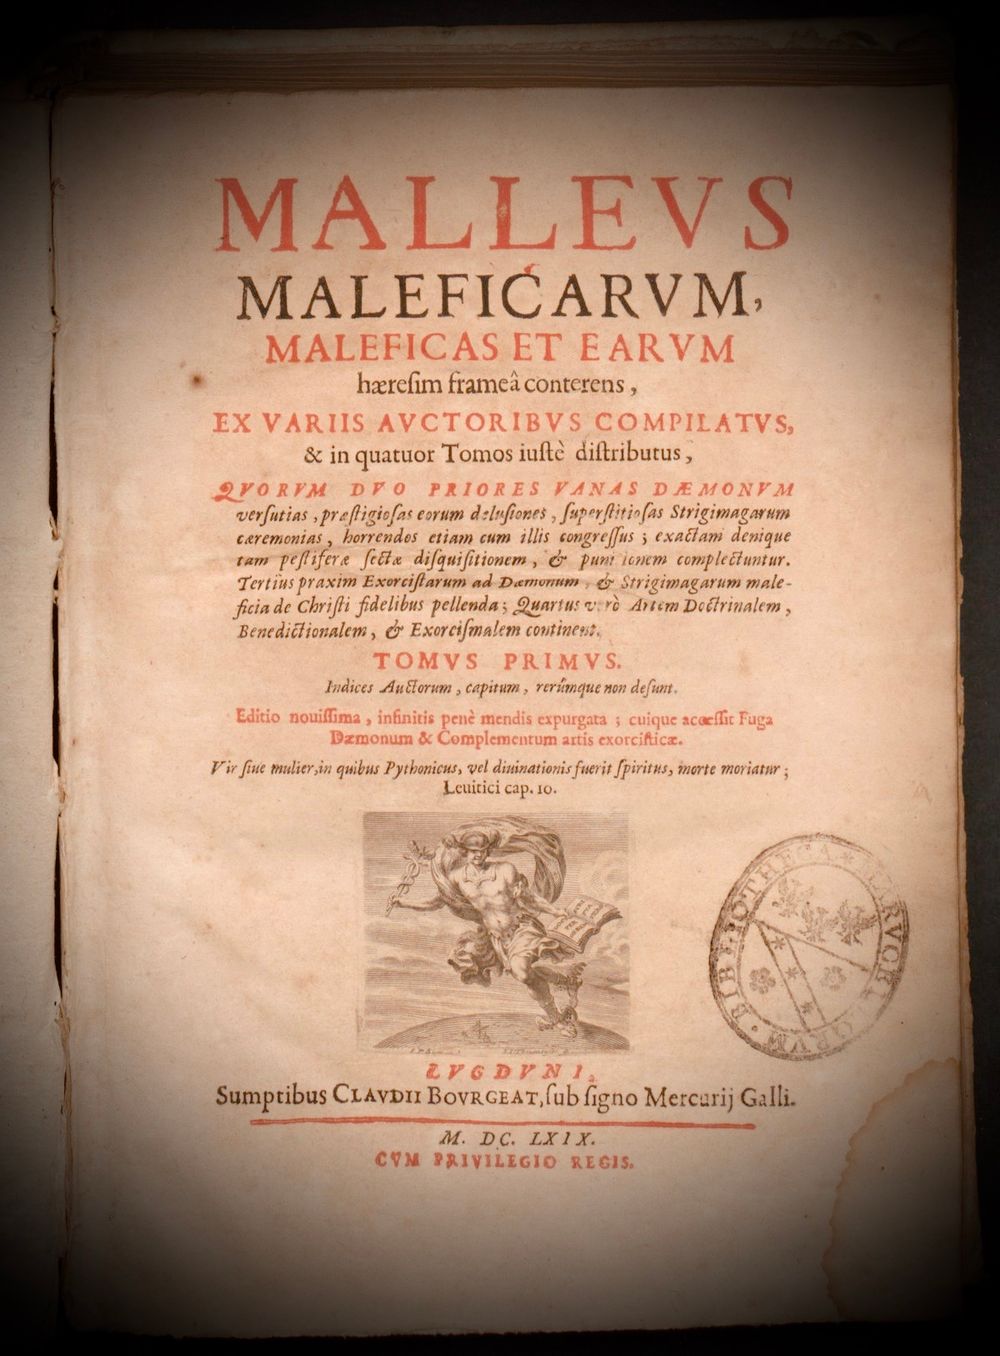 Malleus Maleficarum (Hammer of Witches) by Heinrich Kramer